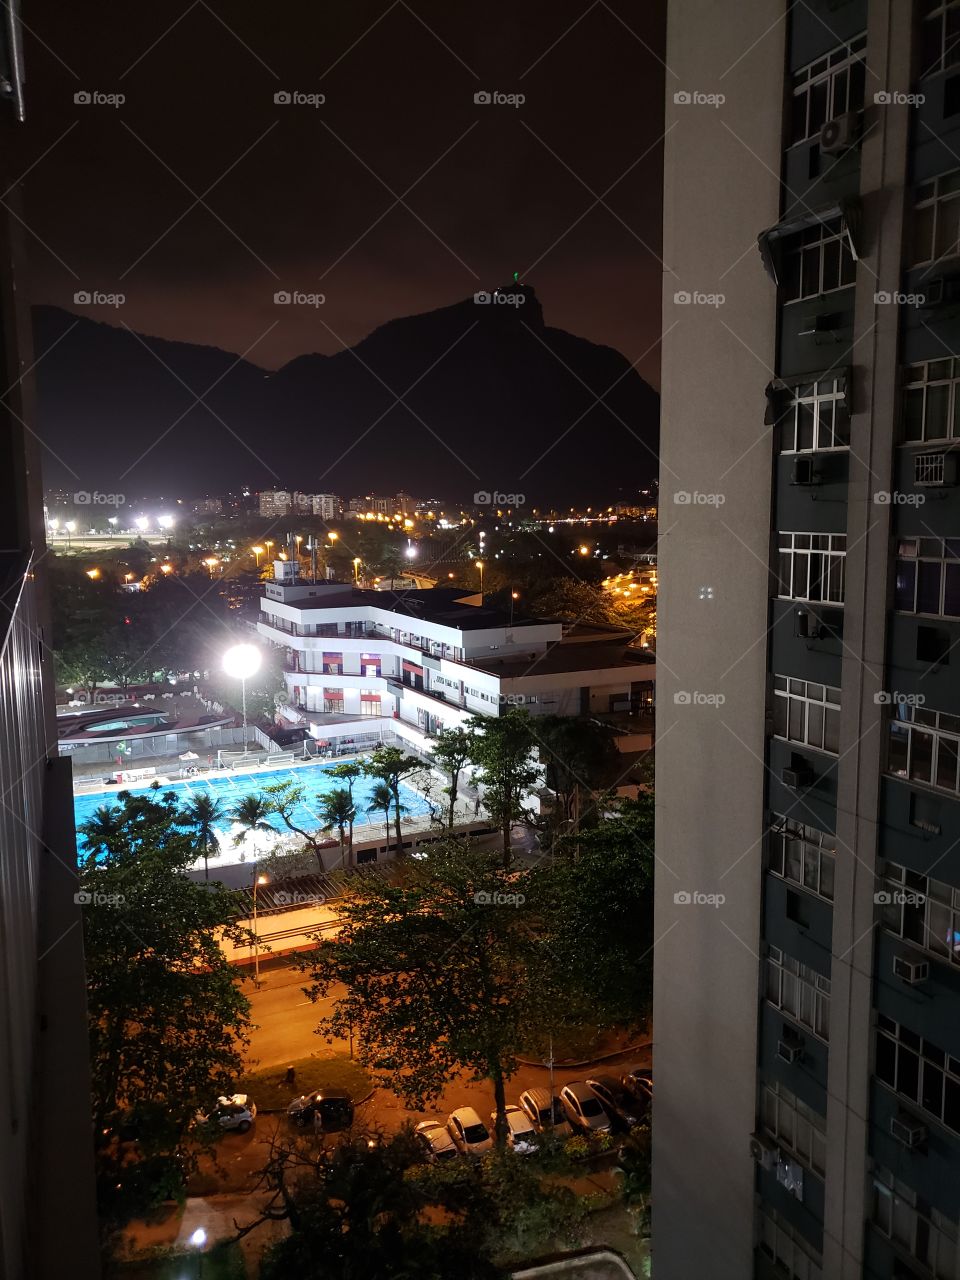 Vista do Apartamento no Leblon, piscina do clube de  regatas do Flamengo e ao fundo o Cristo Redentor, Rio de Janeiro, Brasil.